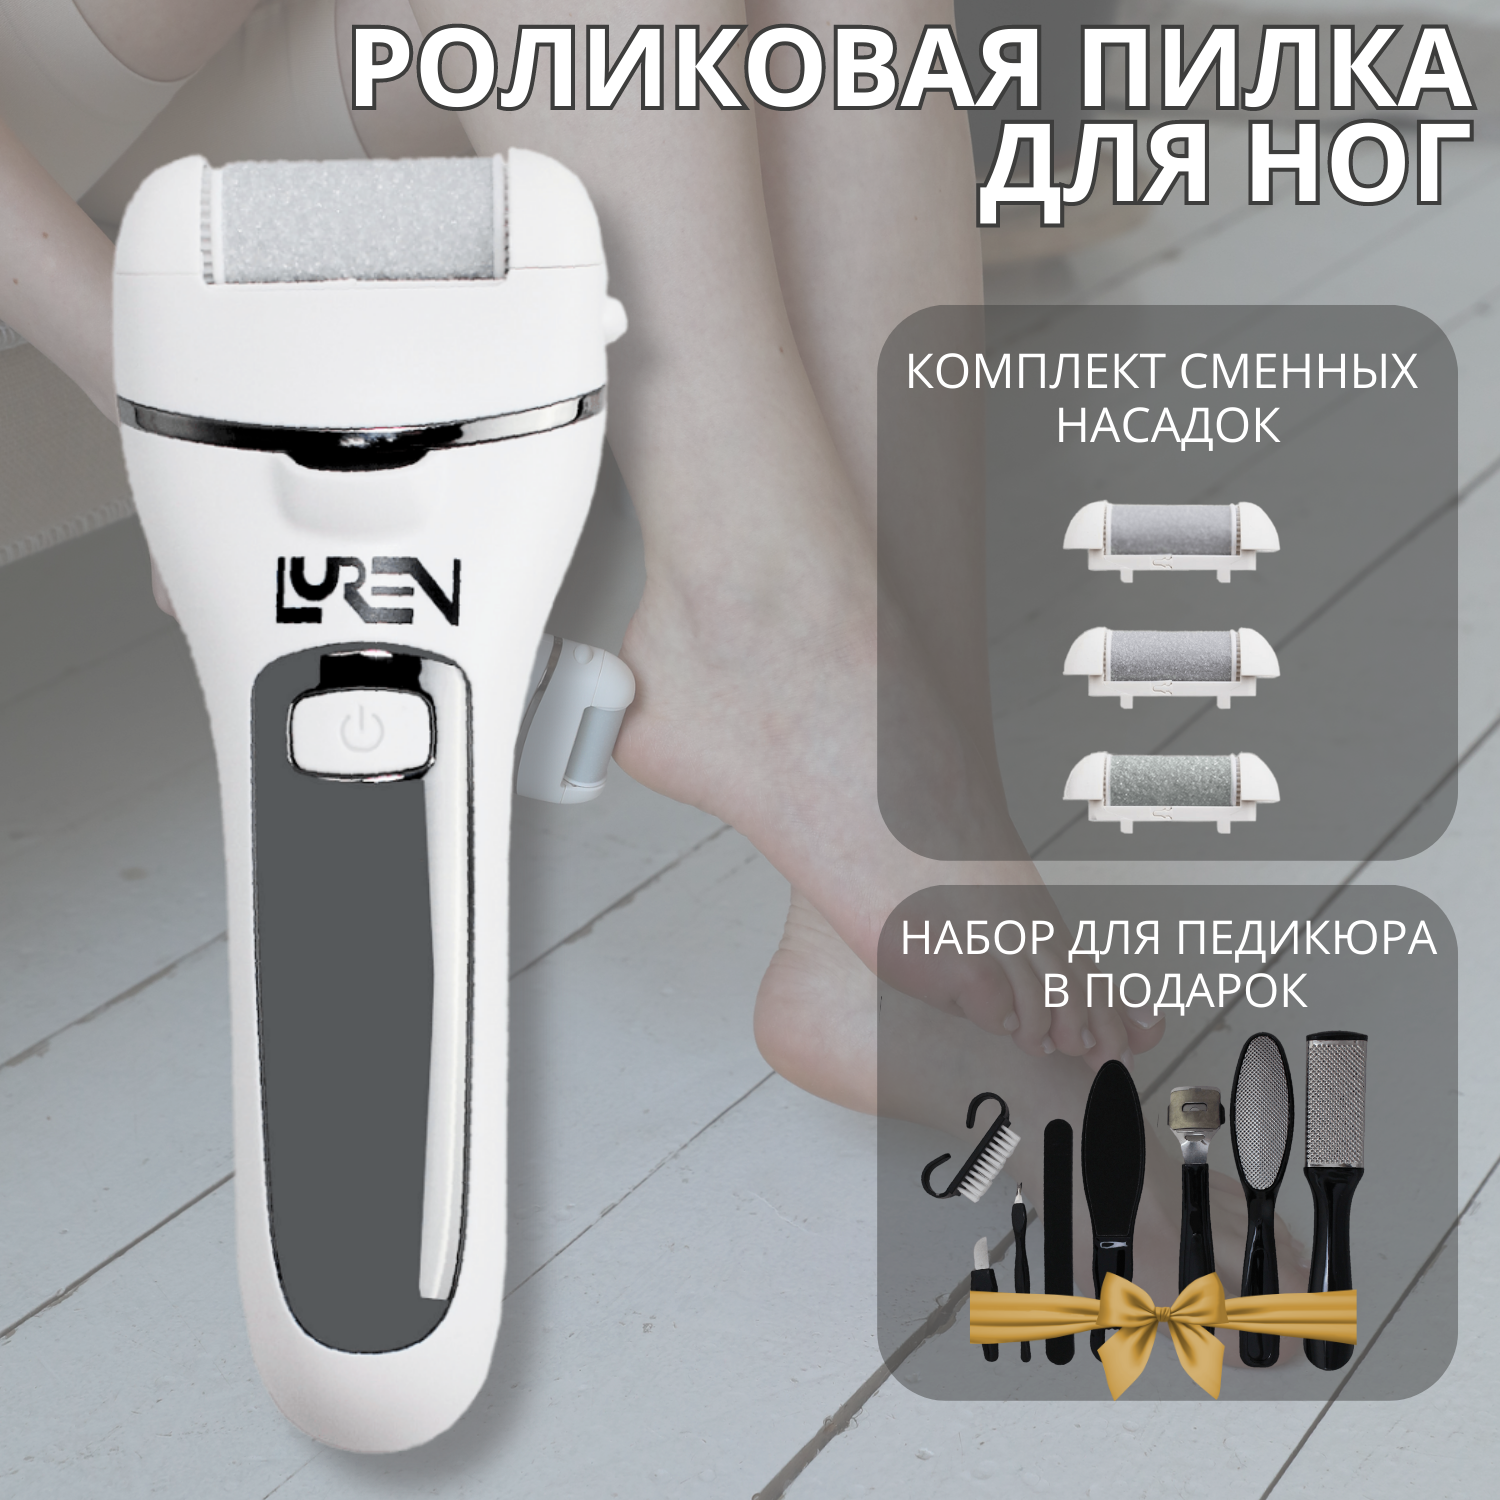 Электрическая пилка для ног Luren СА29063 прибор для ухода за ногами набор для педикюра clevercare пилка для пяток электрическая